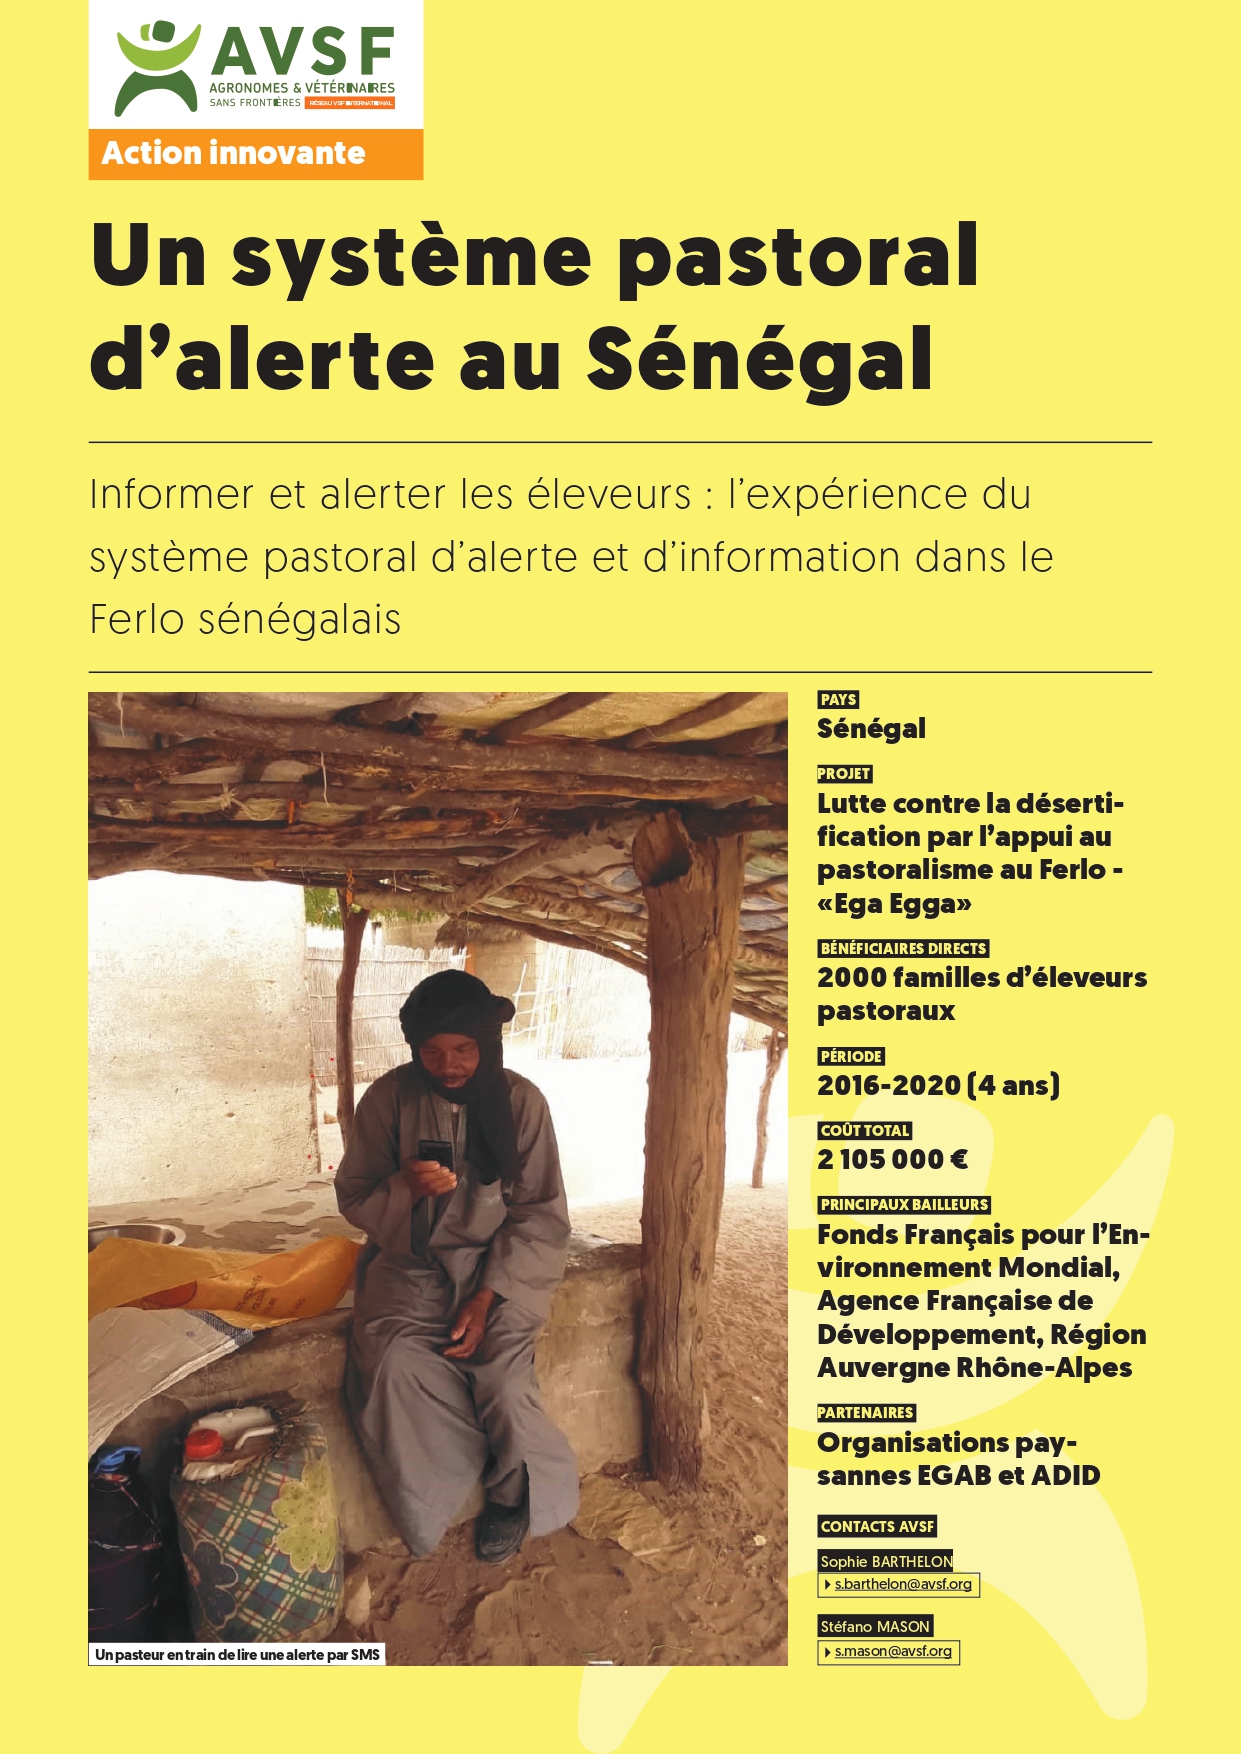 Un système pastoral d’alerte au Sénégal publié en 2020